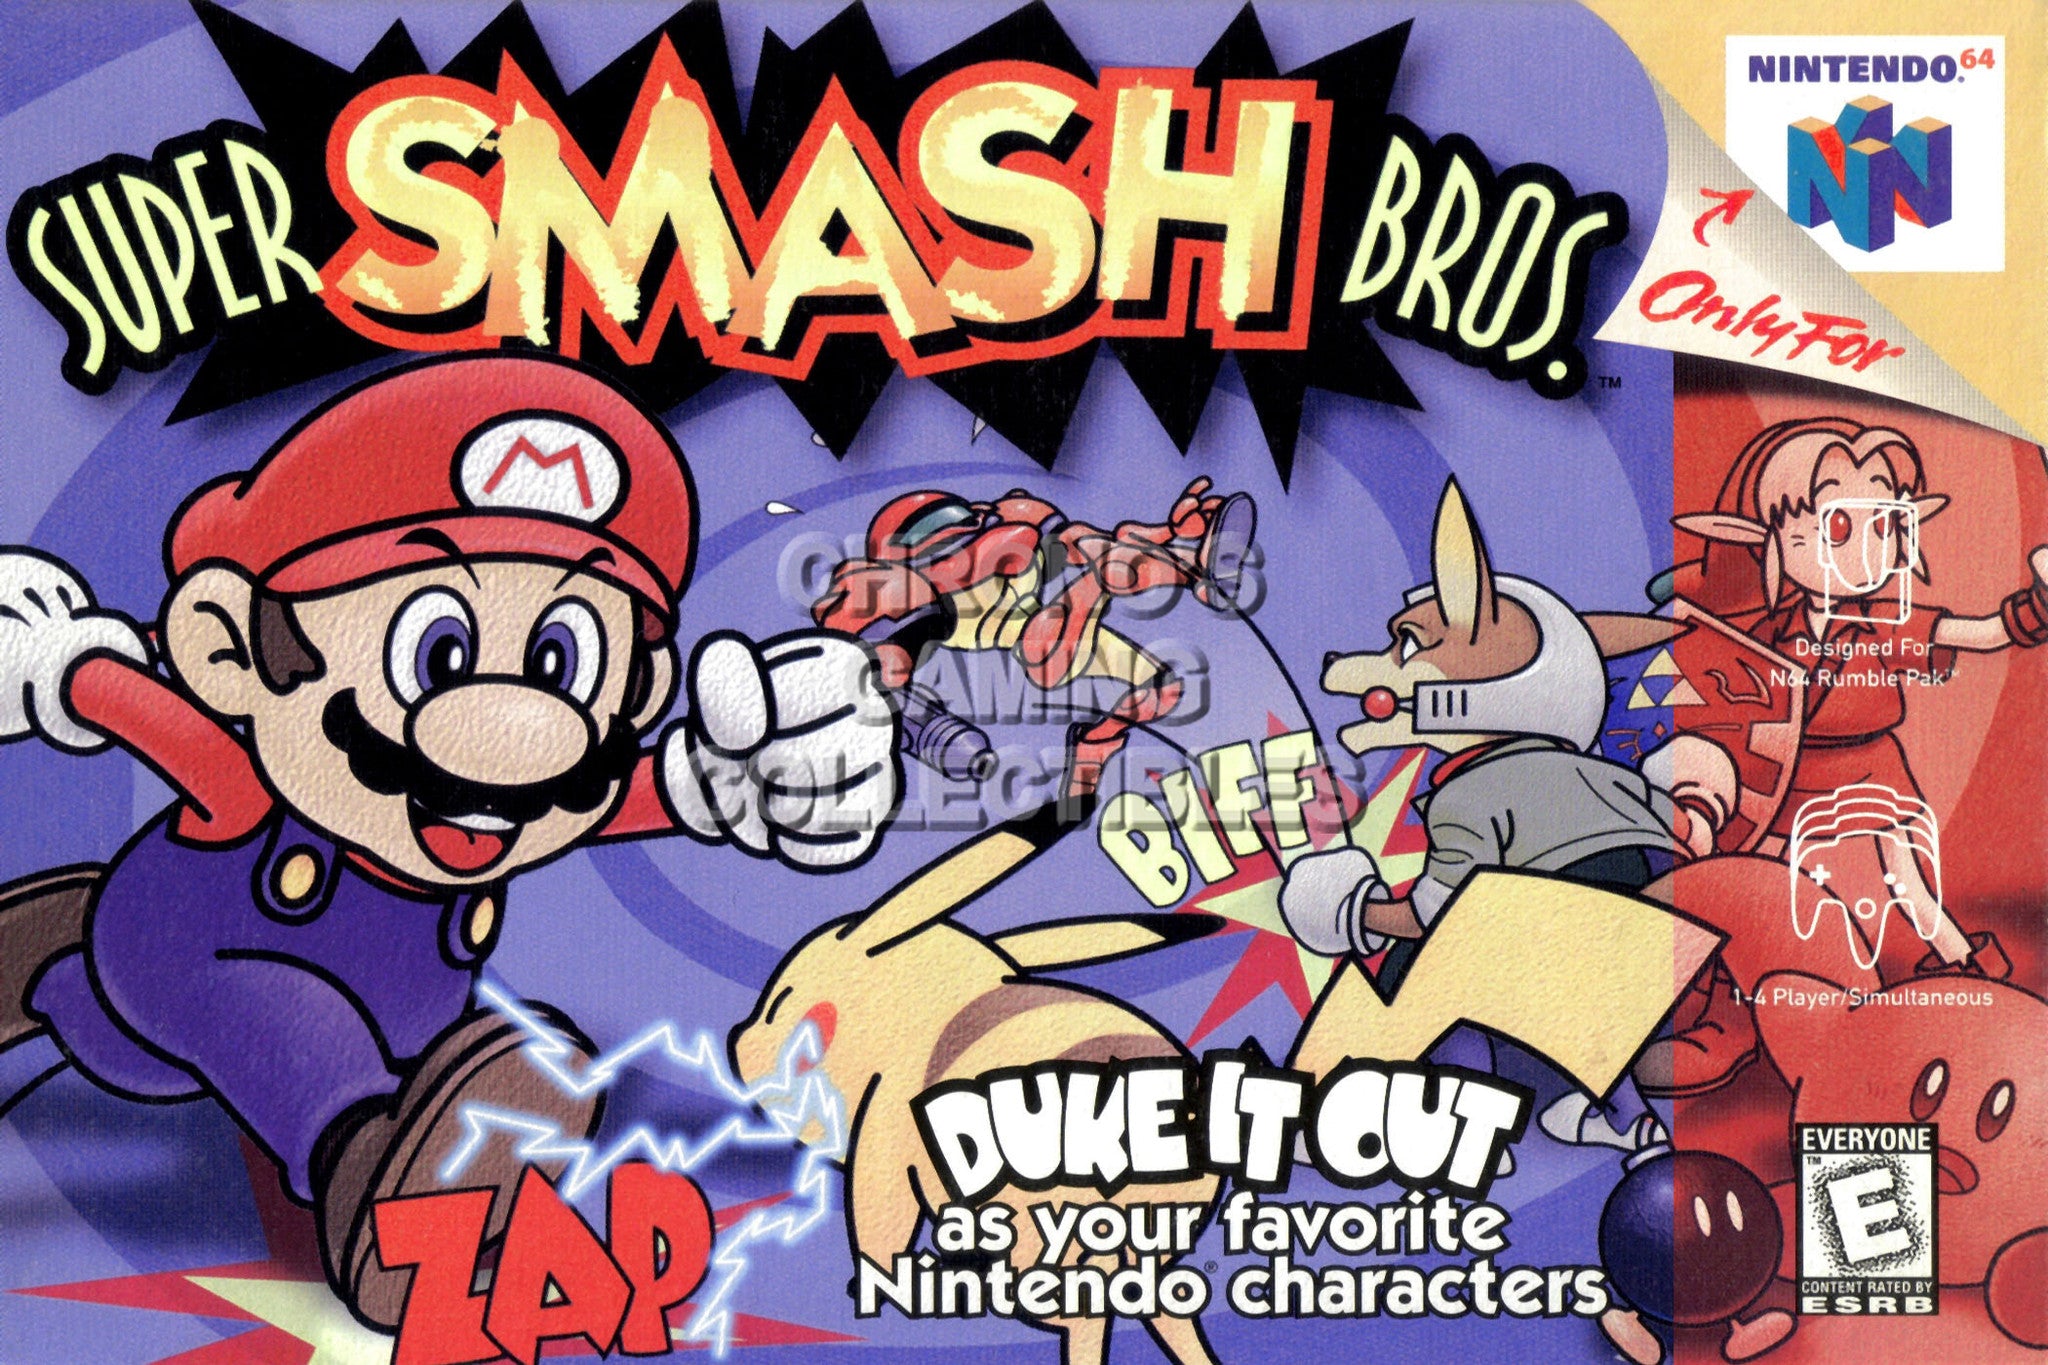 super smash bros n64 box